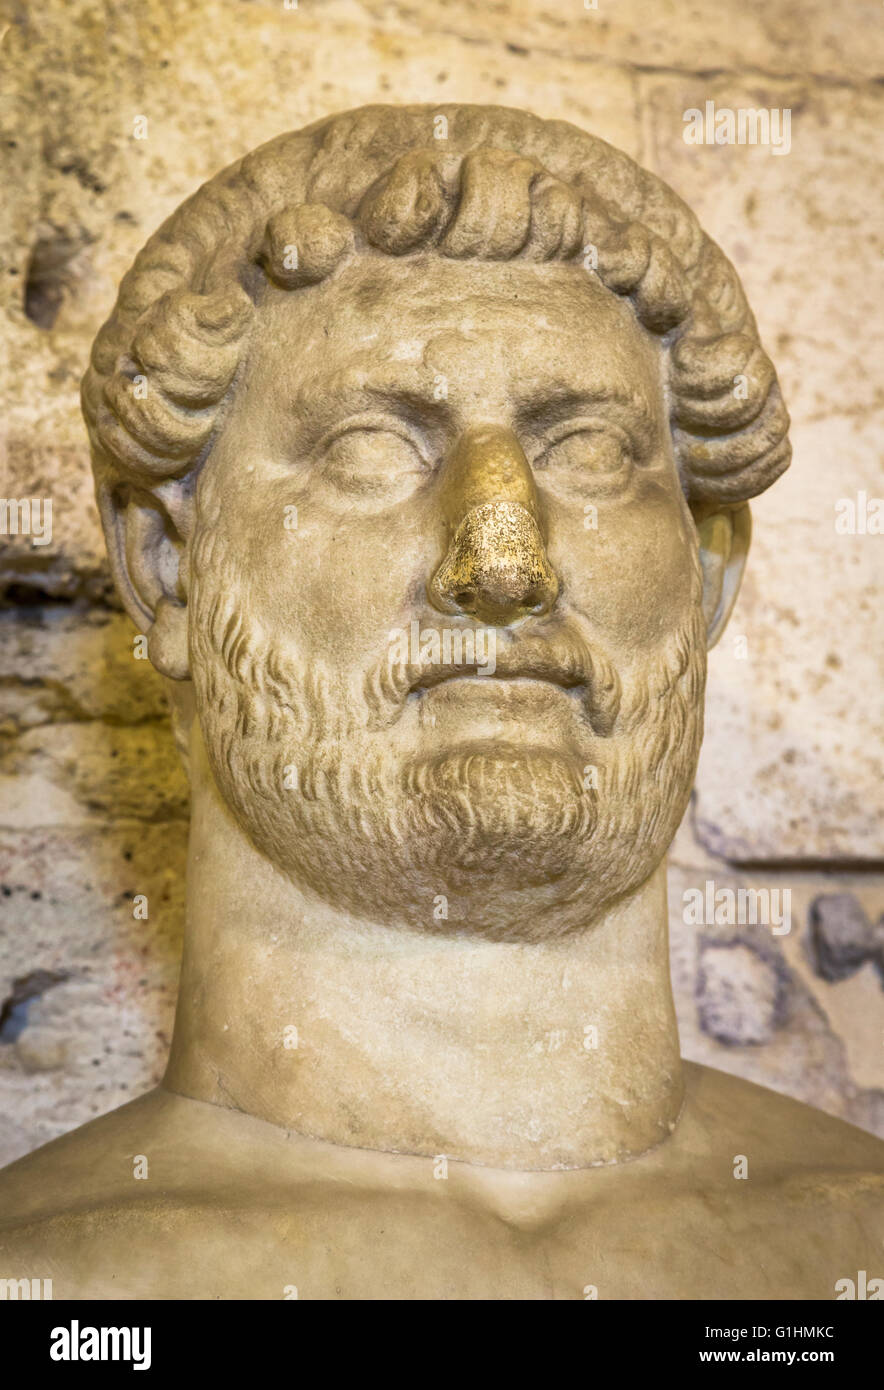 Busto in marmo dell'imperatore romano Adriano (76 - 138 D.C.) risalente al II secolo d.c. sul display in Castel Sant' Angelo, Roma Foto Stock